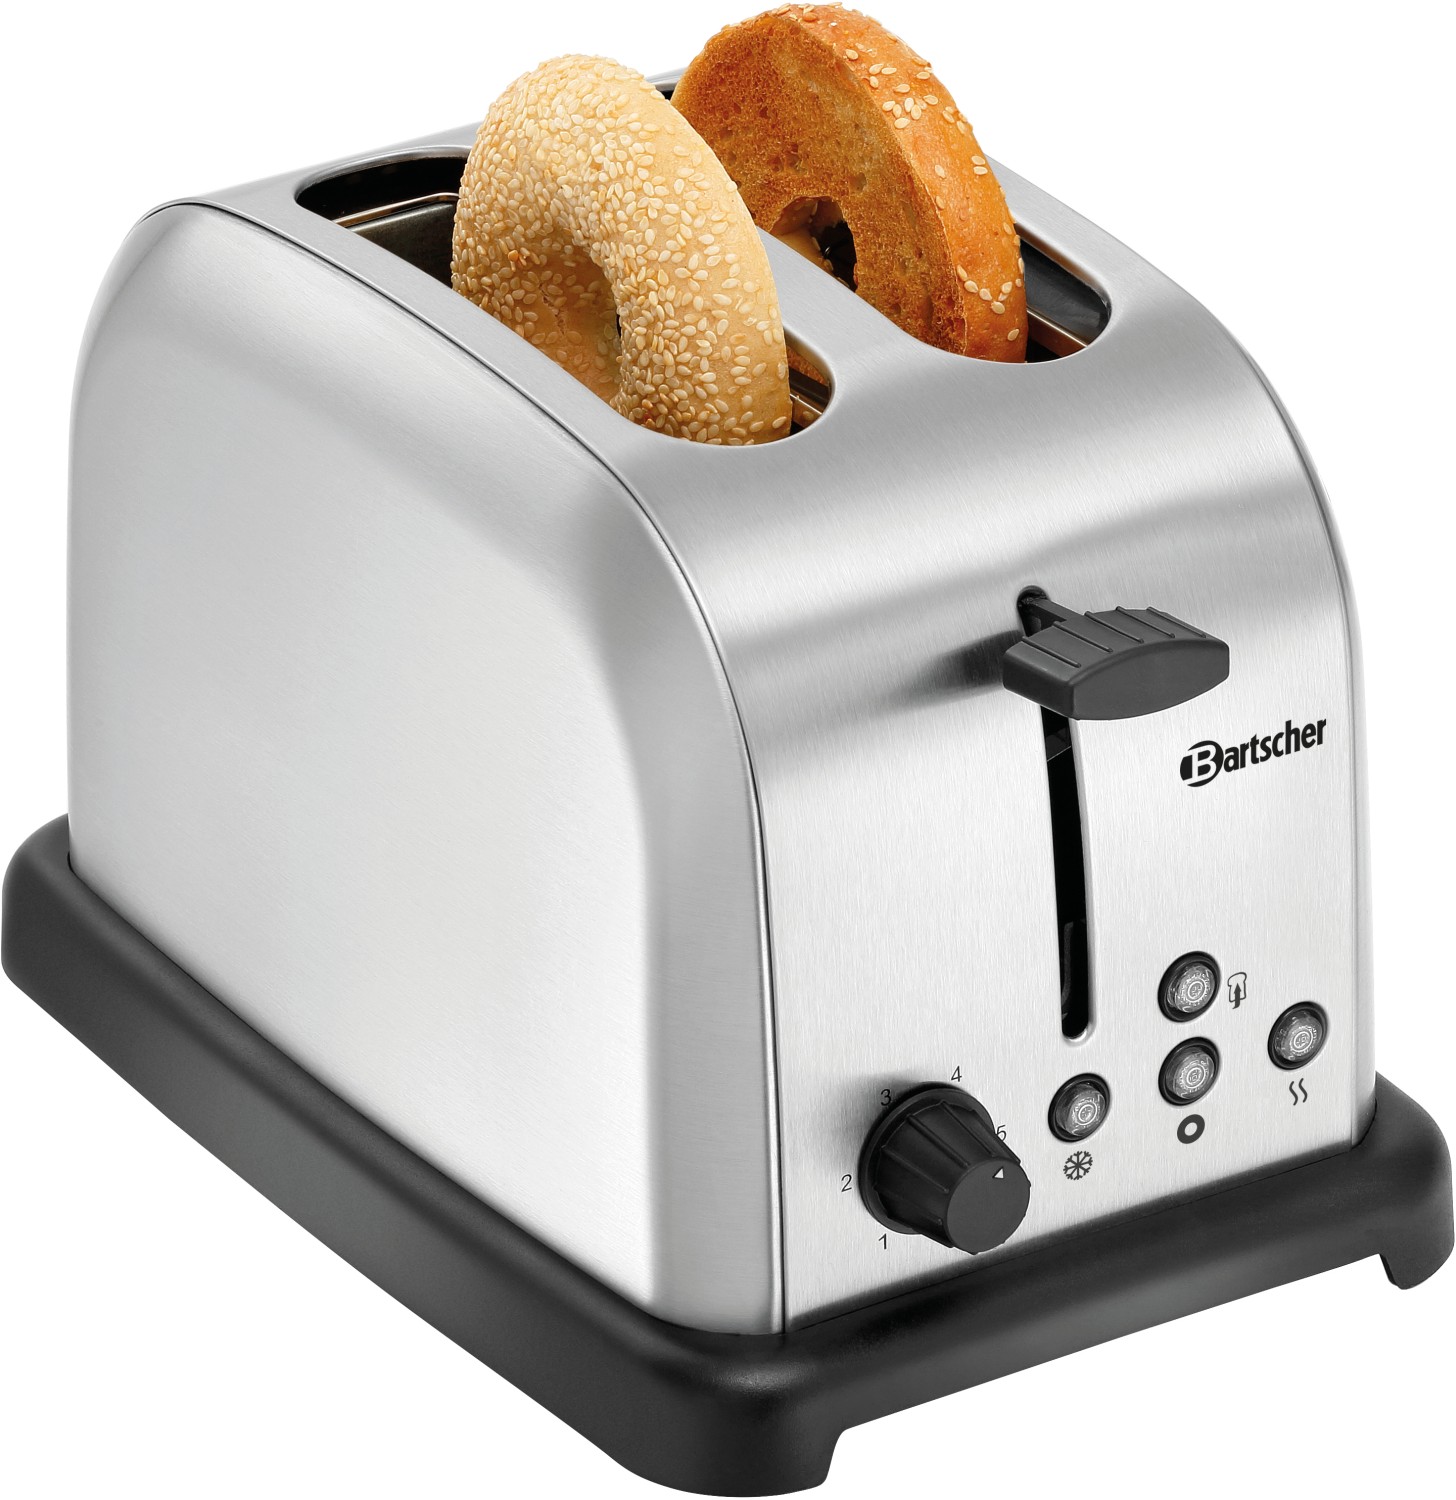  Bartscher Toaster TBRB20 